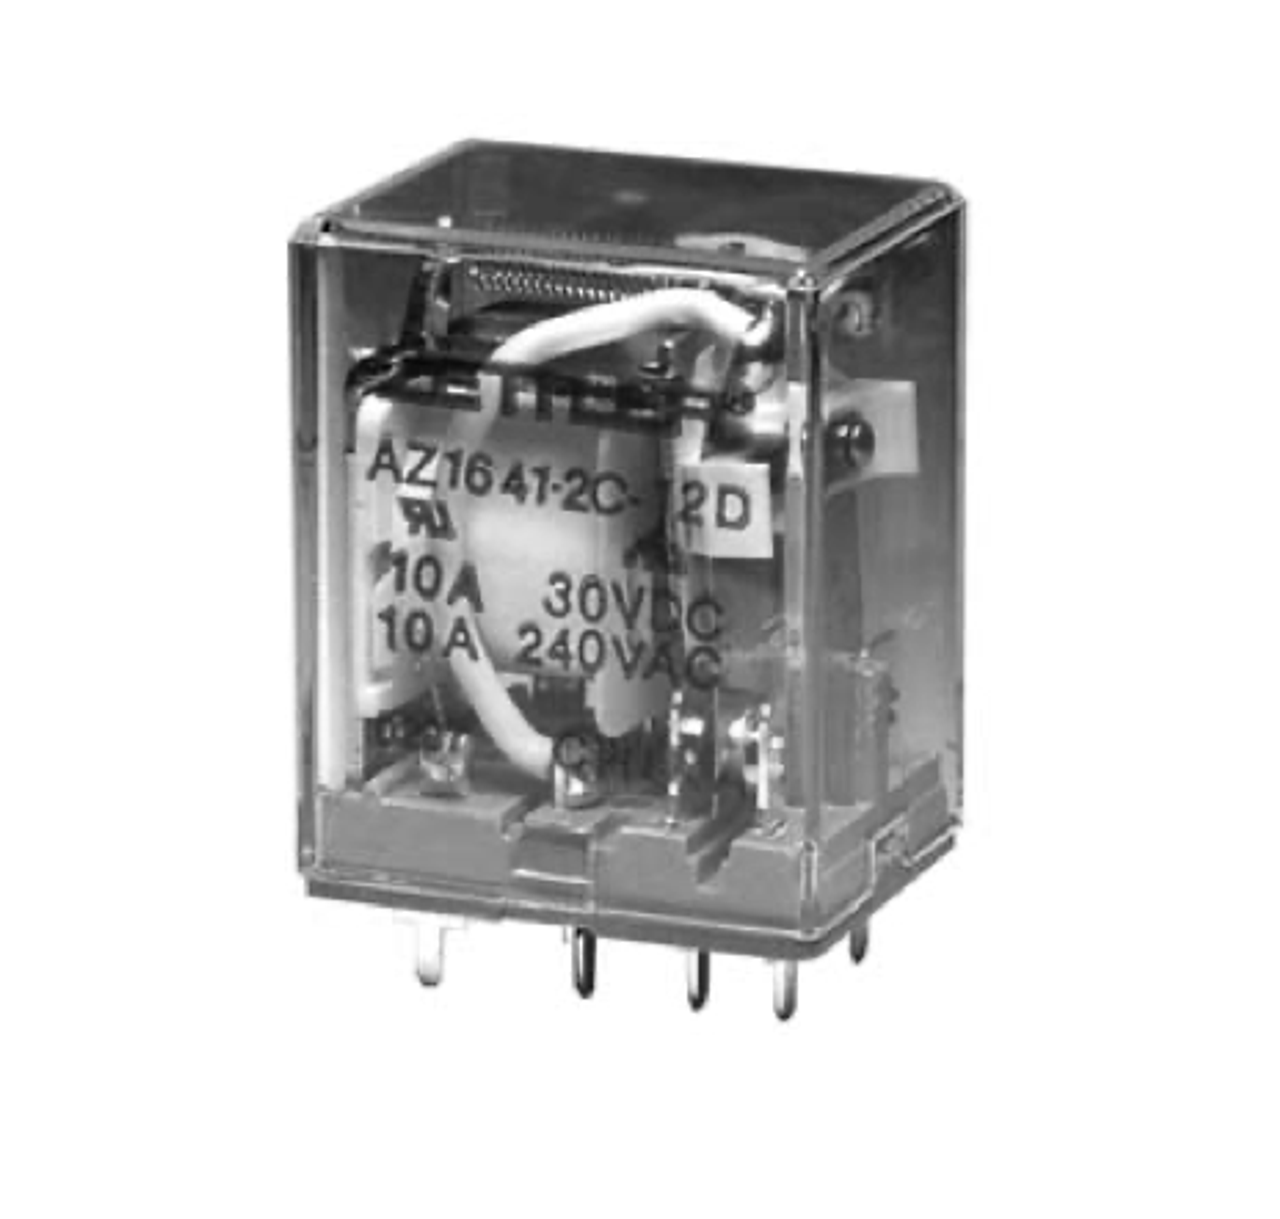 American Zettler AZ1641-2C-220A Power Relay